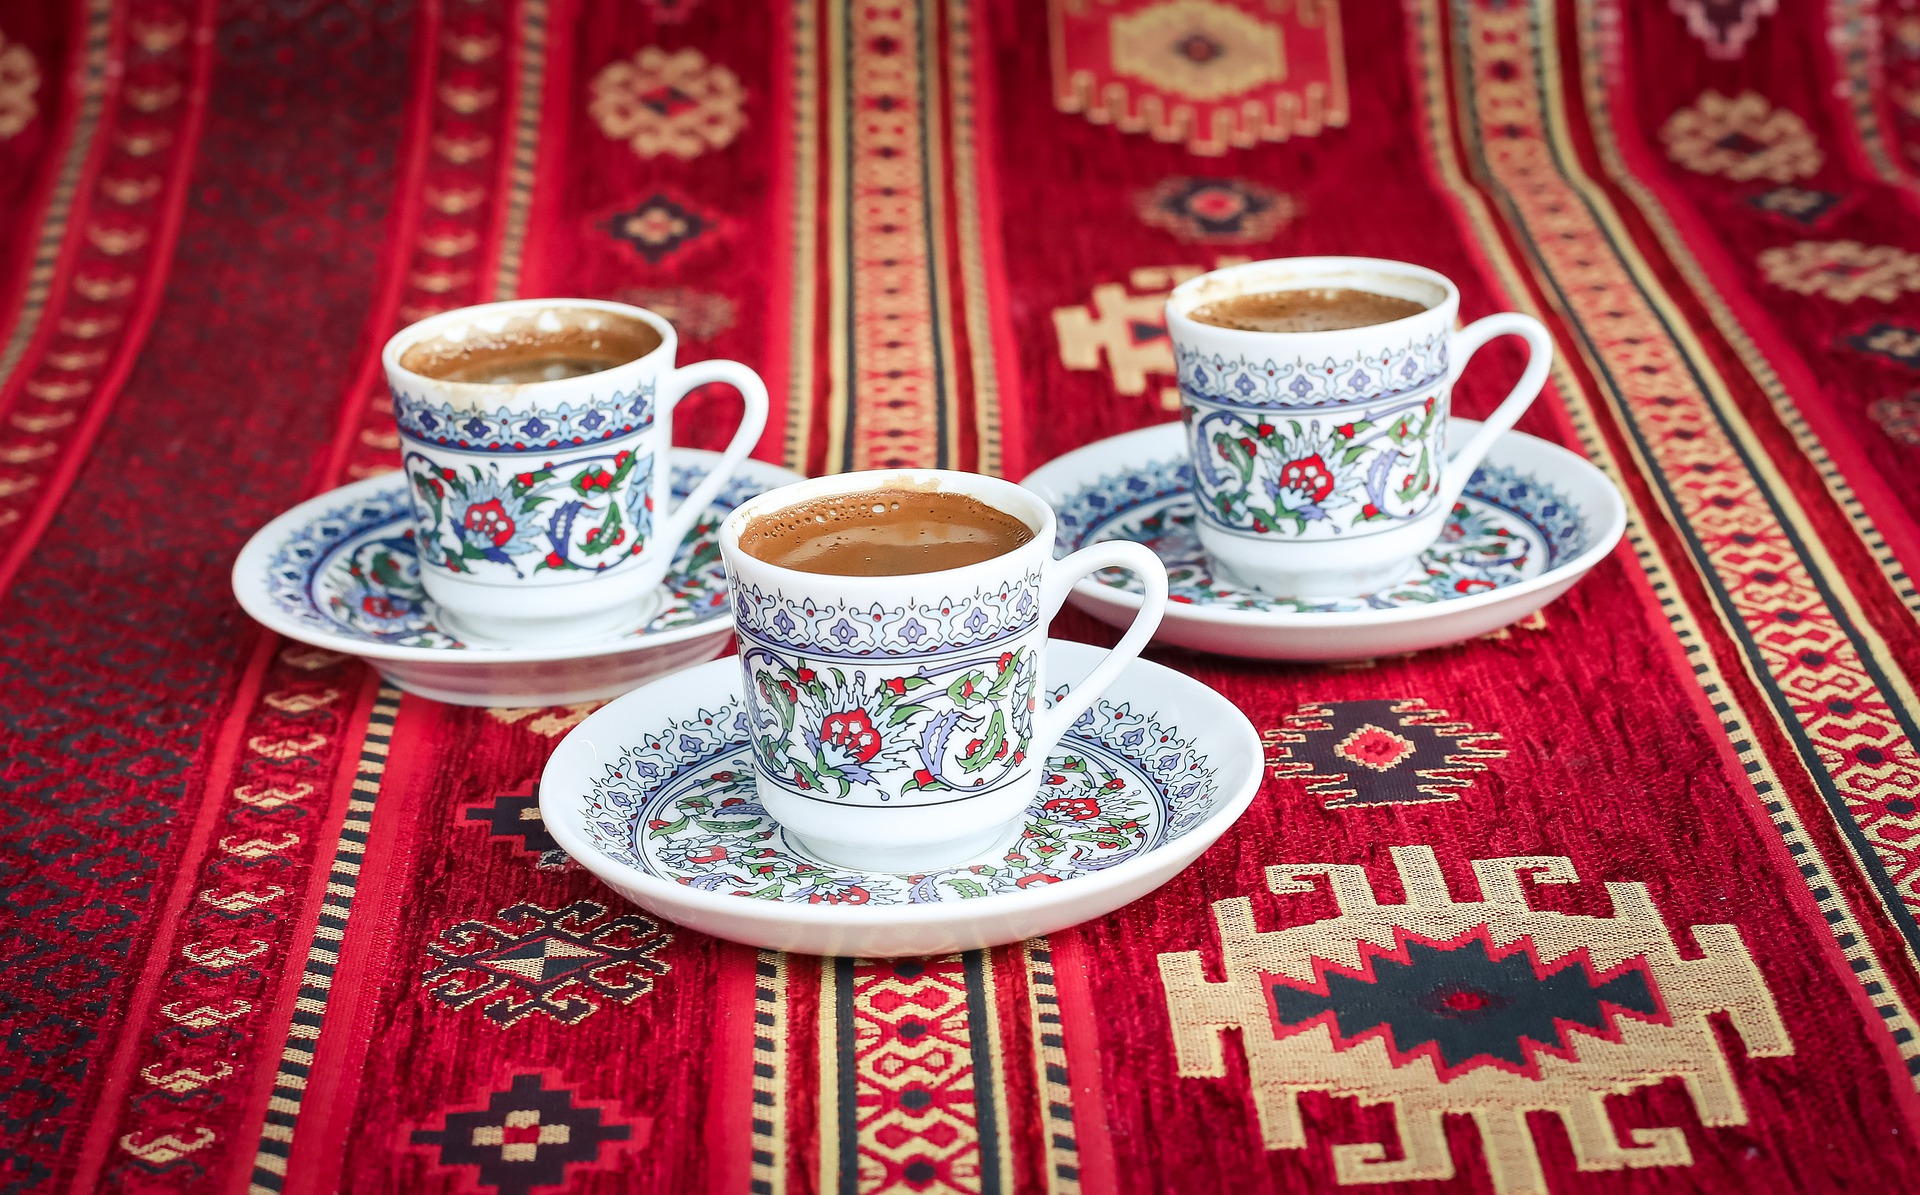 tyrkisk kaffe med mælk, tyrkisk mælkekaffe, fakta om tyrkisk kaffe, tyrkisk kaffe opskrift, fakta om tyrkisk kaffe, tyrkiske drikke, smag på tyrkiet, alanya, alanya blog, tyrkiet blogger, dansk i tyrkiet